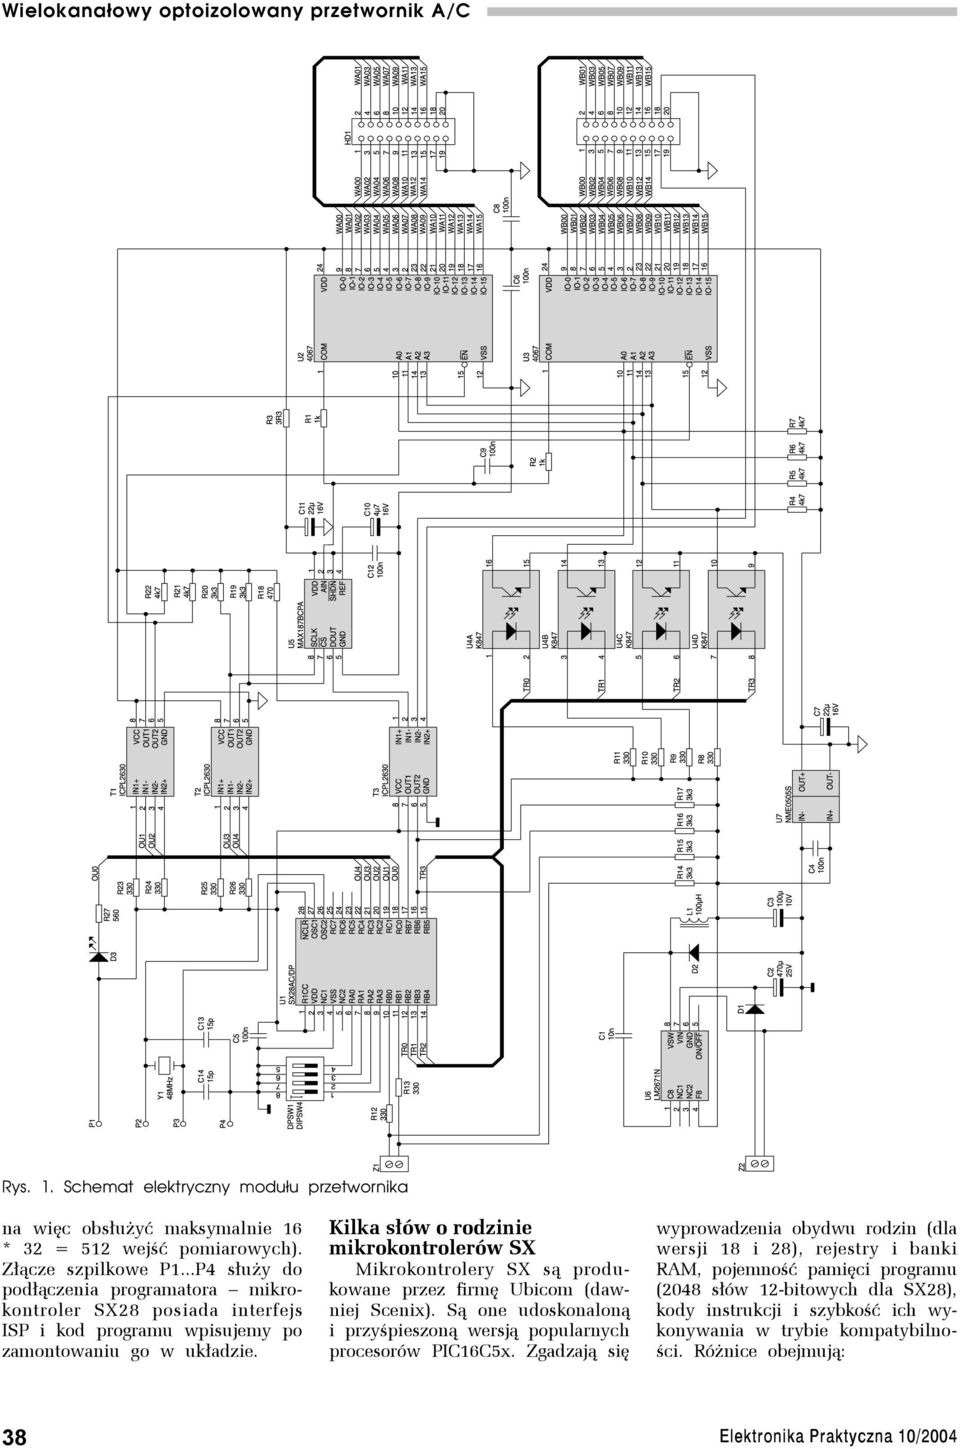 Kilka słów o rodzinie mikrokontrolerów SX Mikrokontrolery SX są produkowane przez firmę Ubicom (dawniej Scenix).